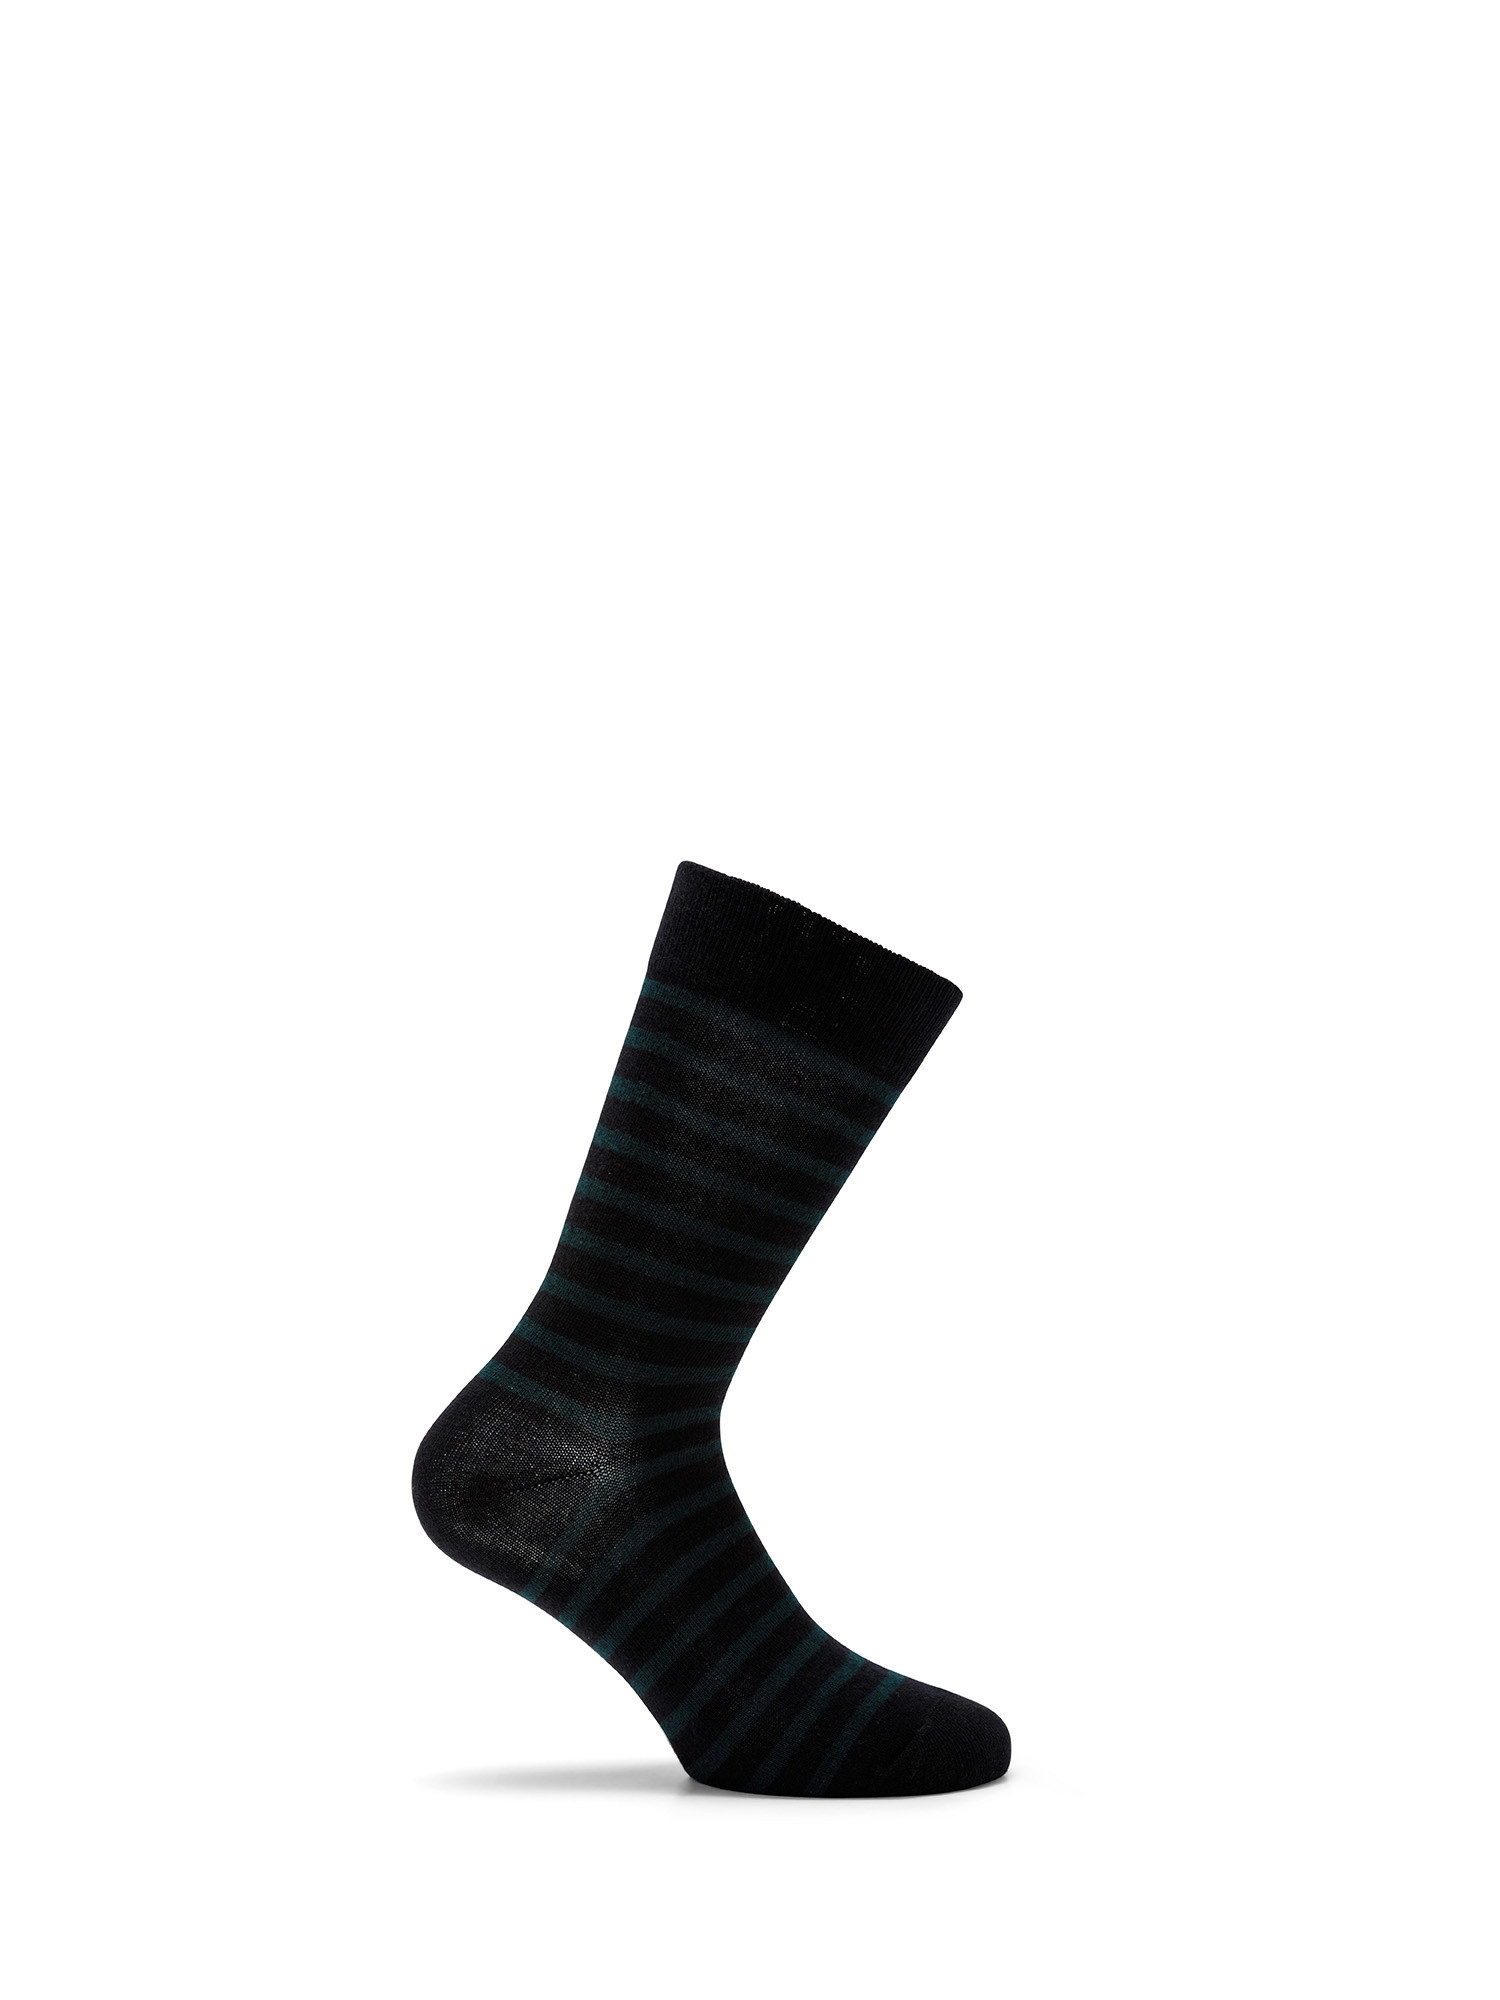 Luca D'Altieri - Set of 3 patterned short socks, Dark Blue, large image number 2